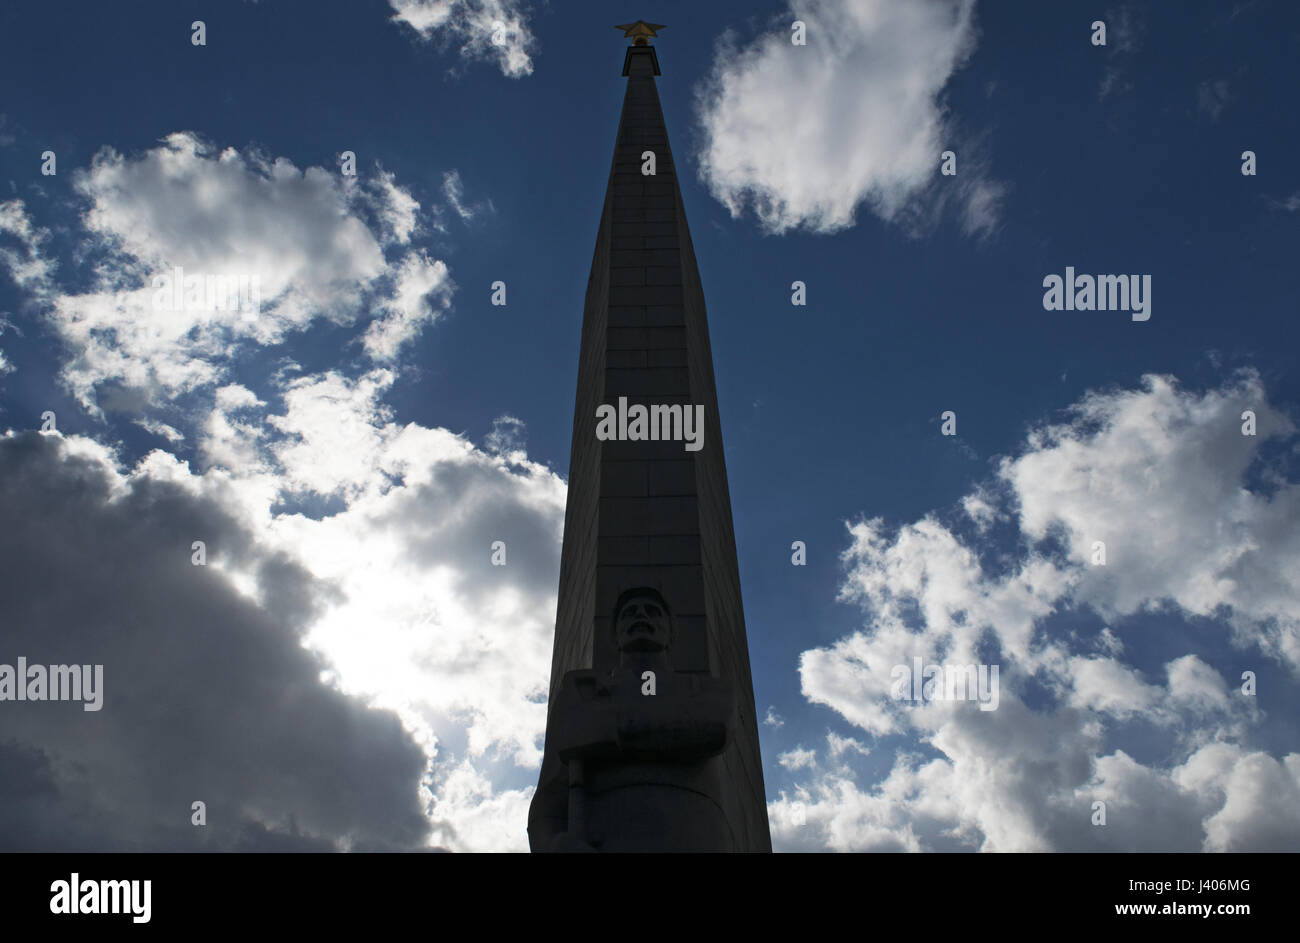 Mosca: l'eroe città Obelisco (1977), un 40 metri di un monumento dedicato a Lenin (1870-1924) e per gli uomini e le donne che sono morti durante la Seconda Guerra Mondiale Foto Stock